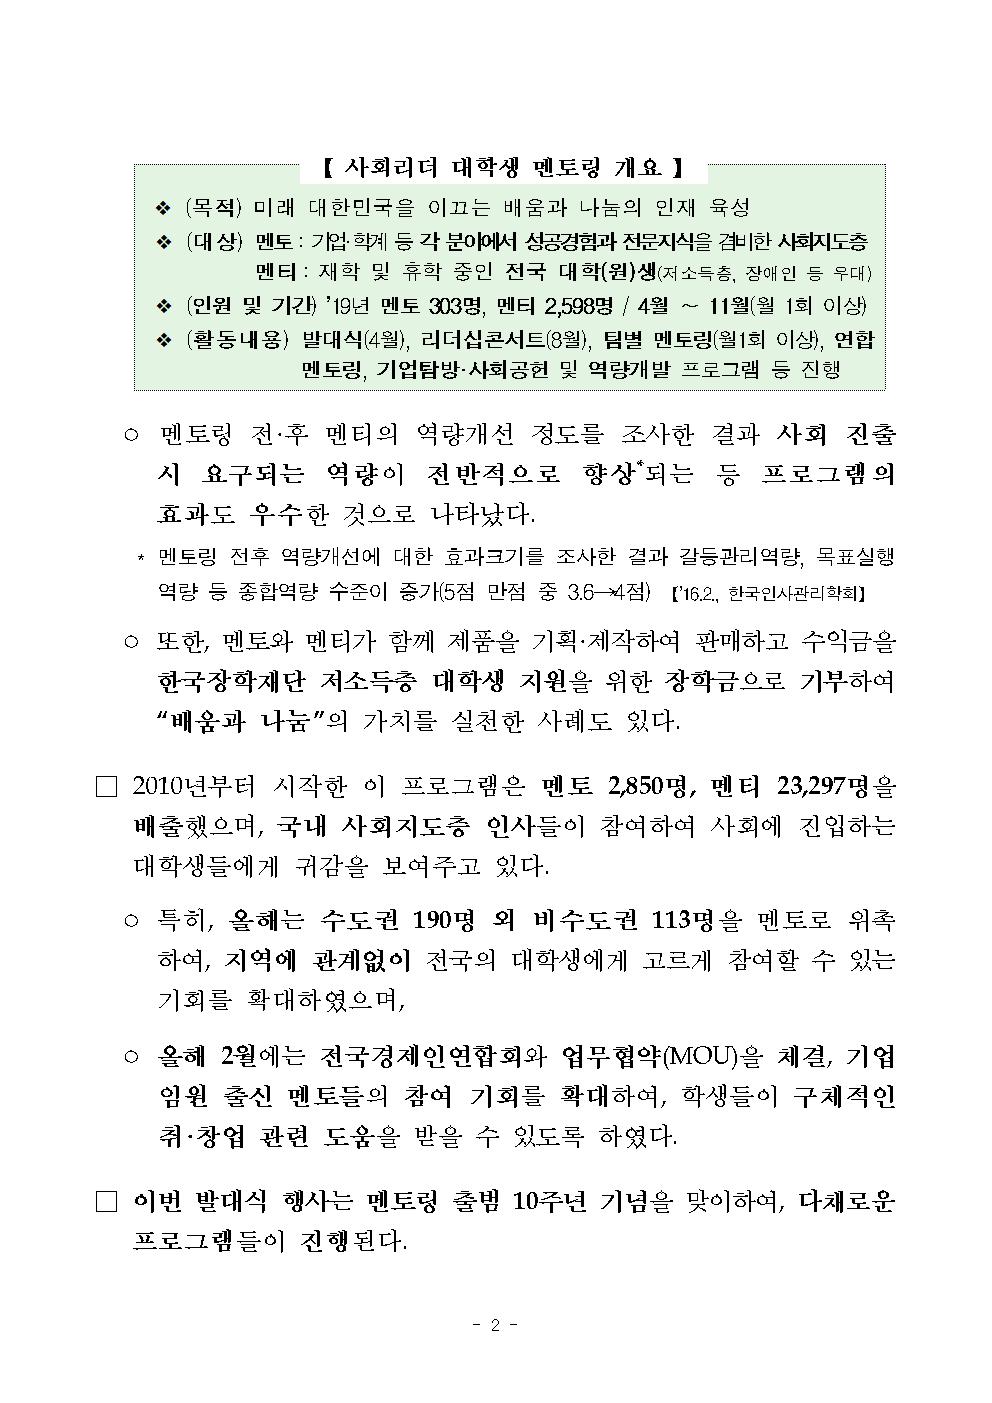 04-12(금)[보도자료] 제10기 사회리더 대학생 멘토링 발대식 개최002.jpg